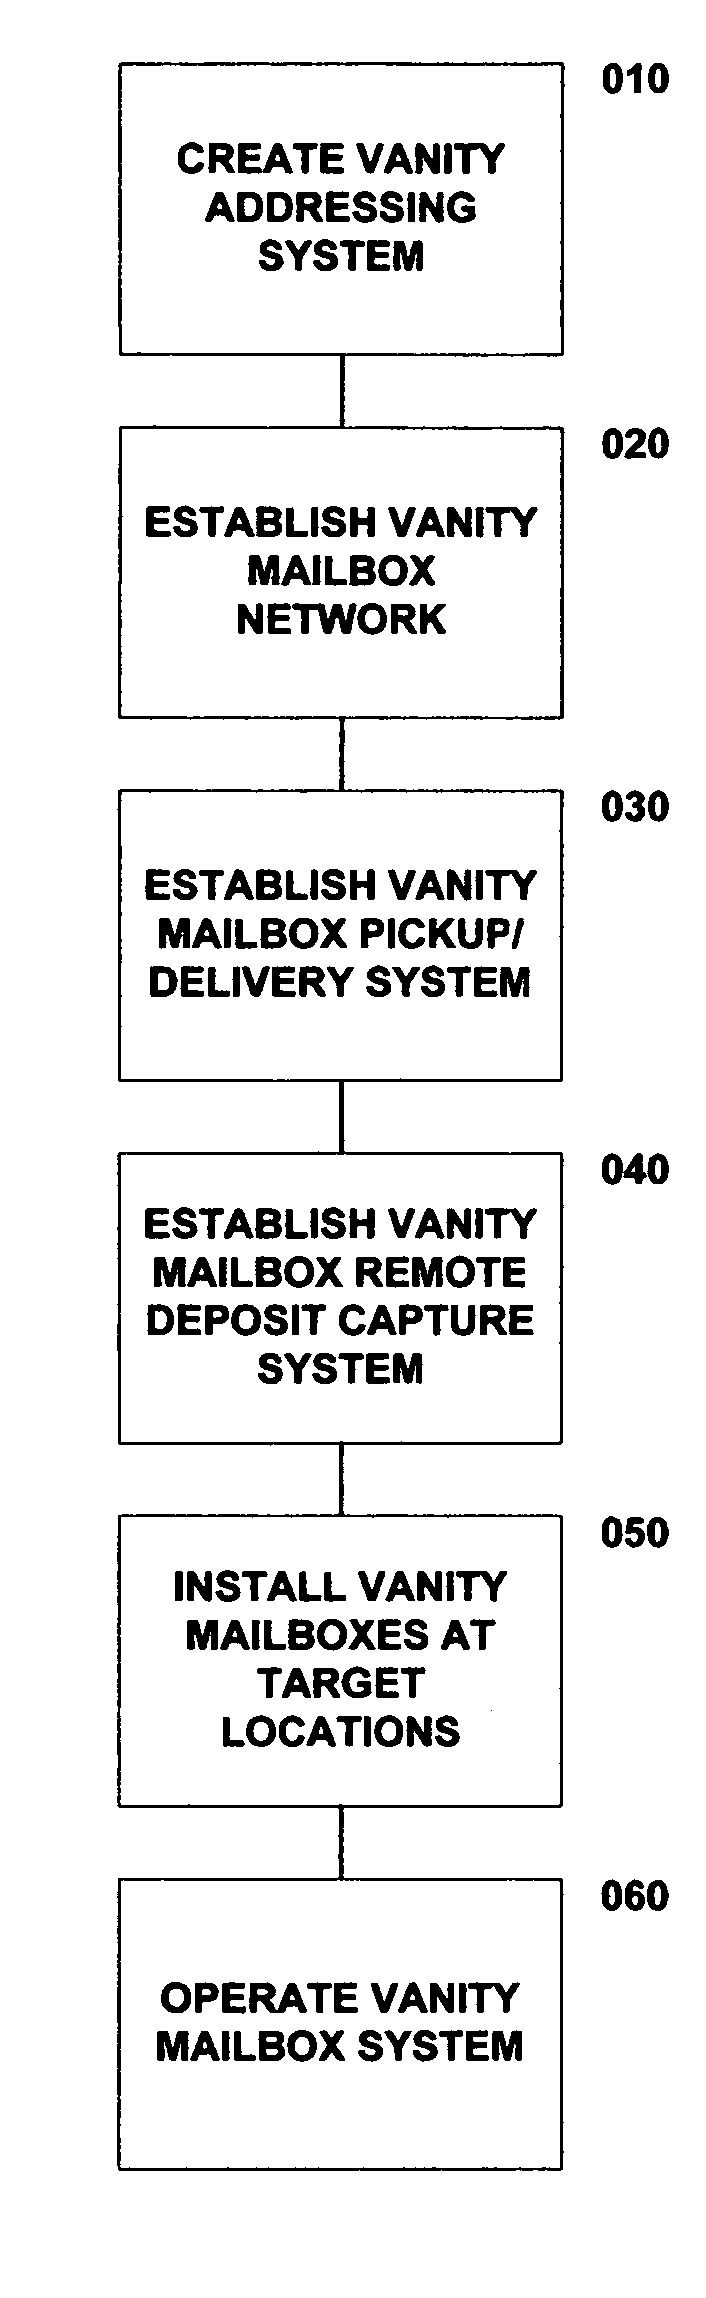 Vanity Mailbox system